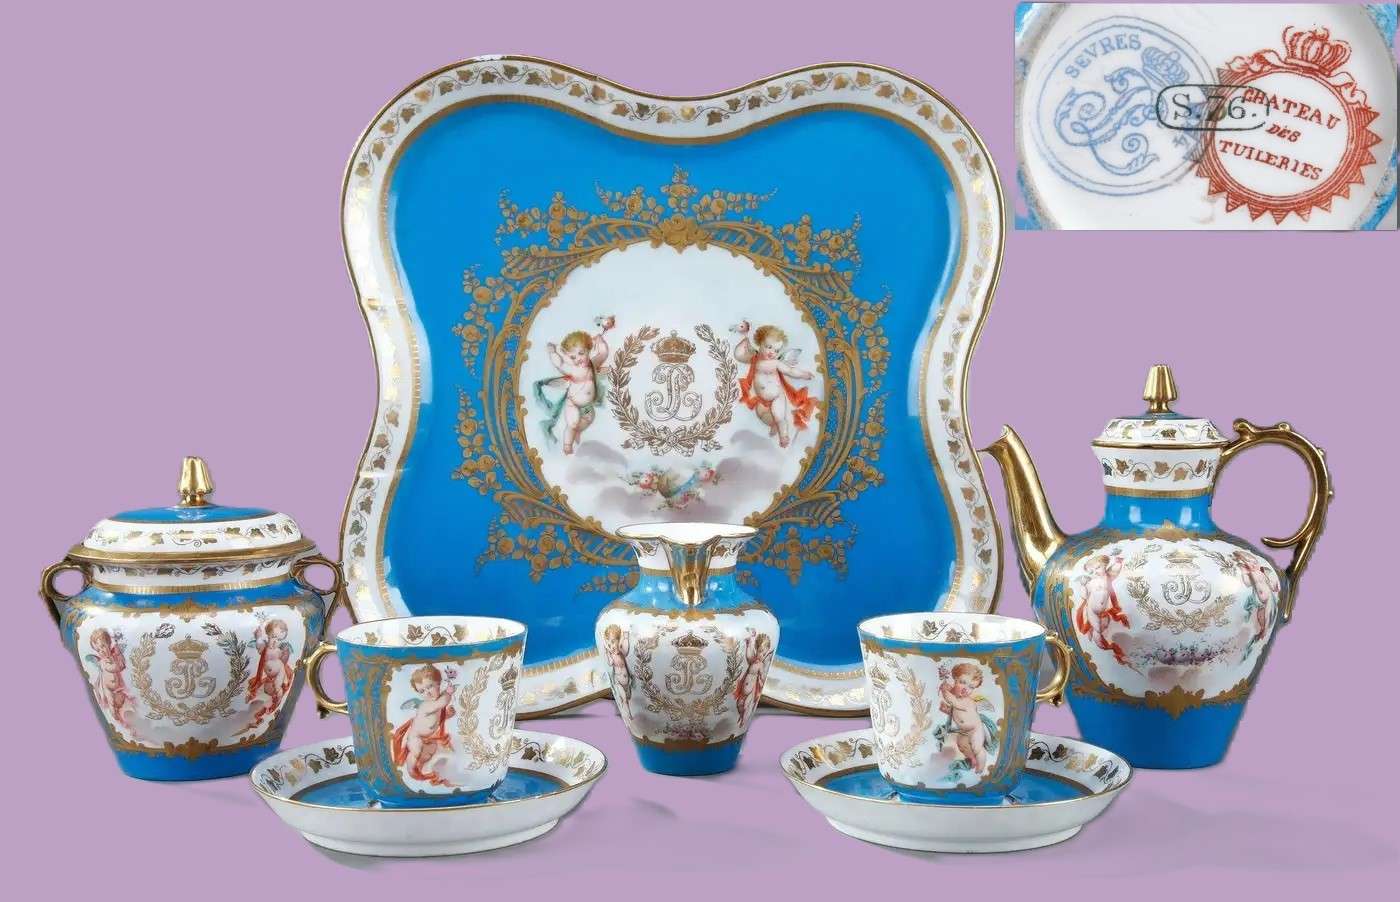 Servizio al tè blu - Sèvres et Tuileries puzzle online